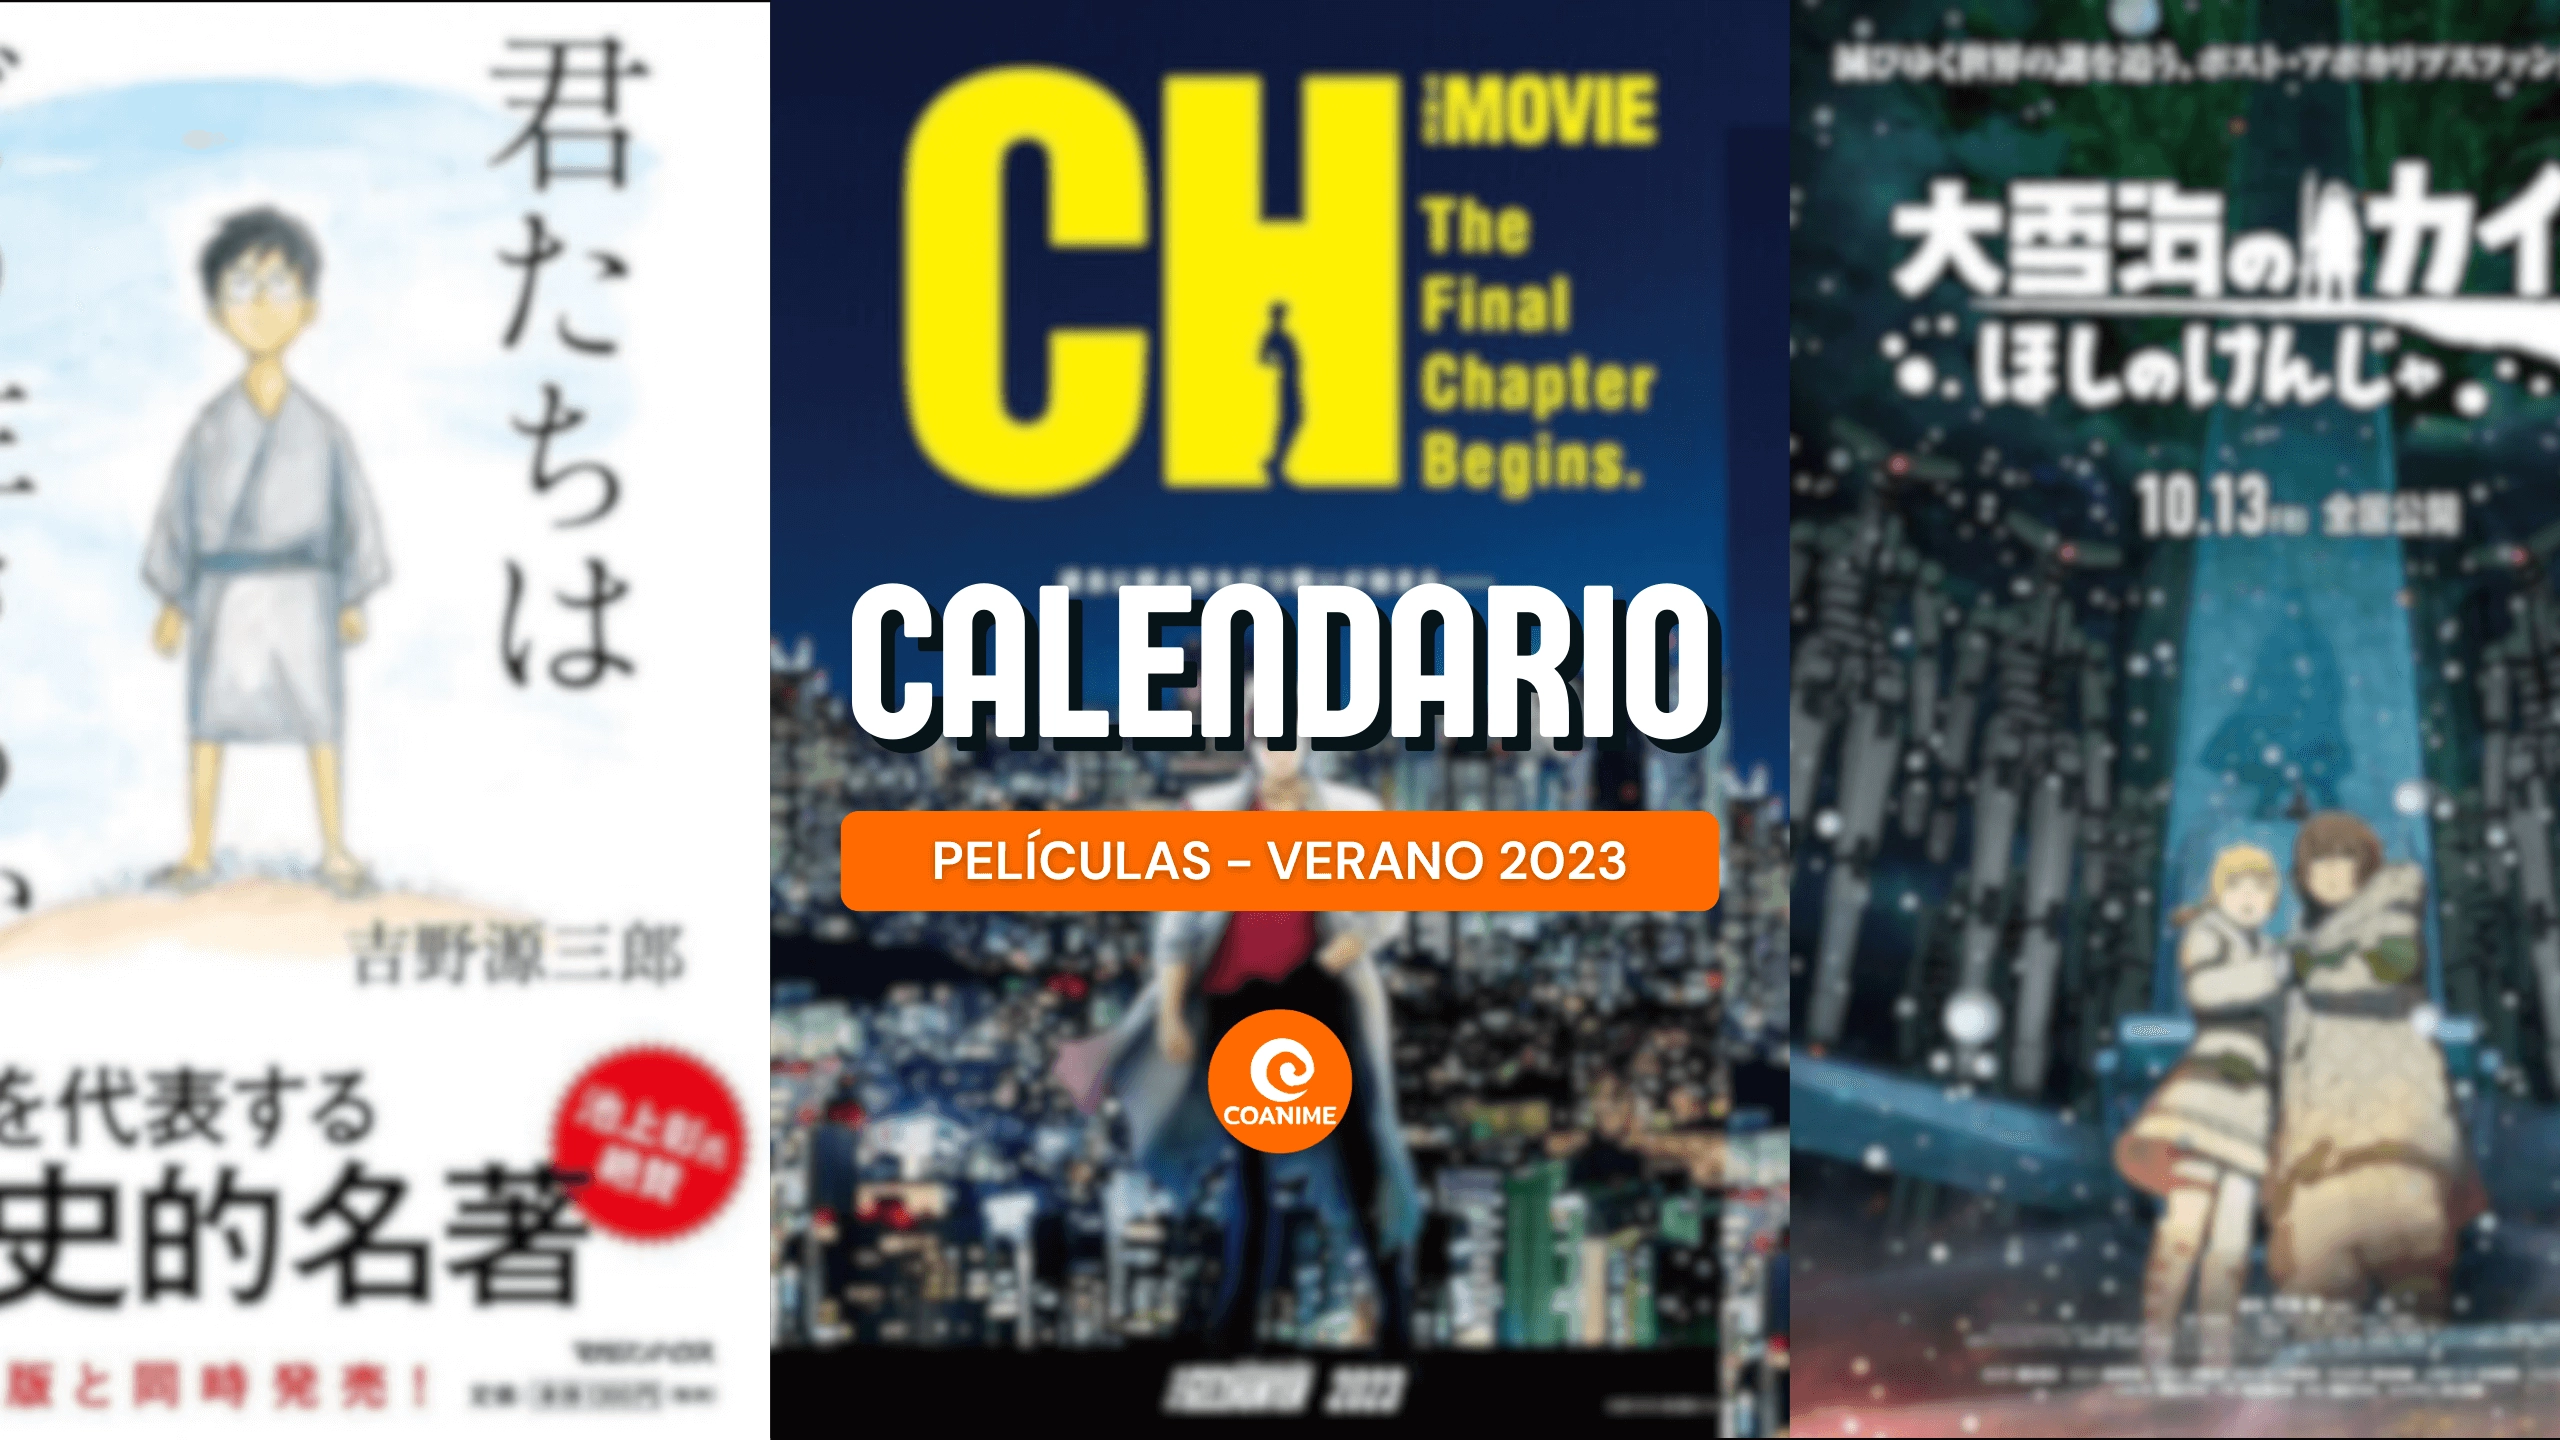 Calendario de estrenos de películas de animes — Verano 2023 - Coanime.net